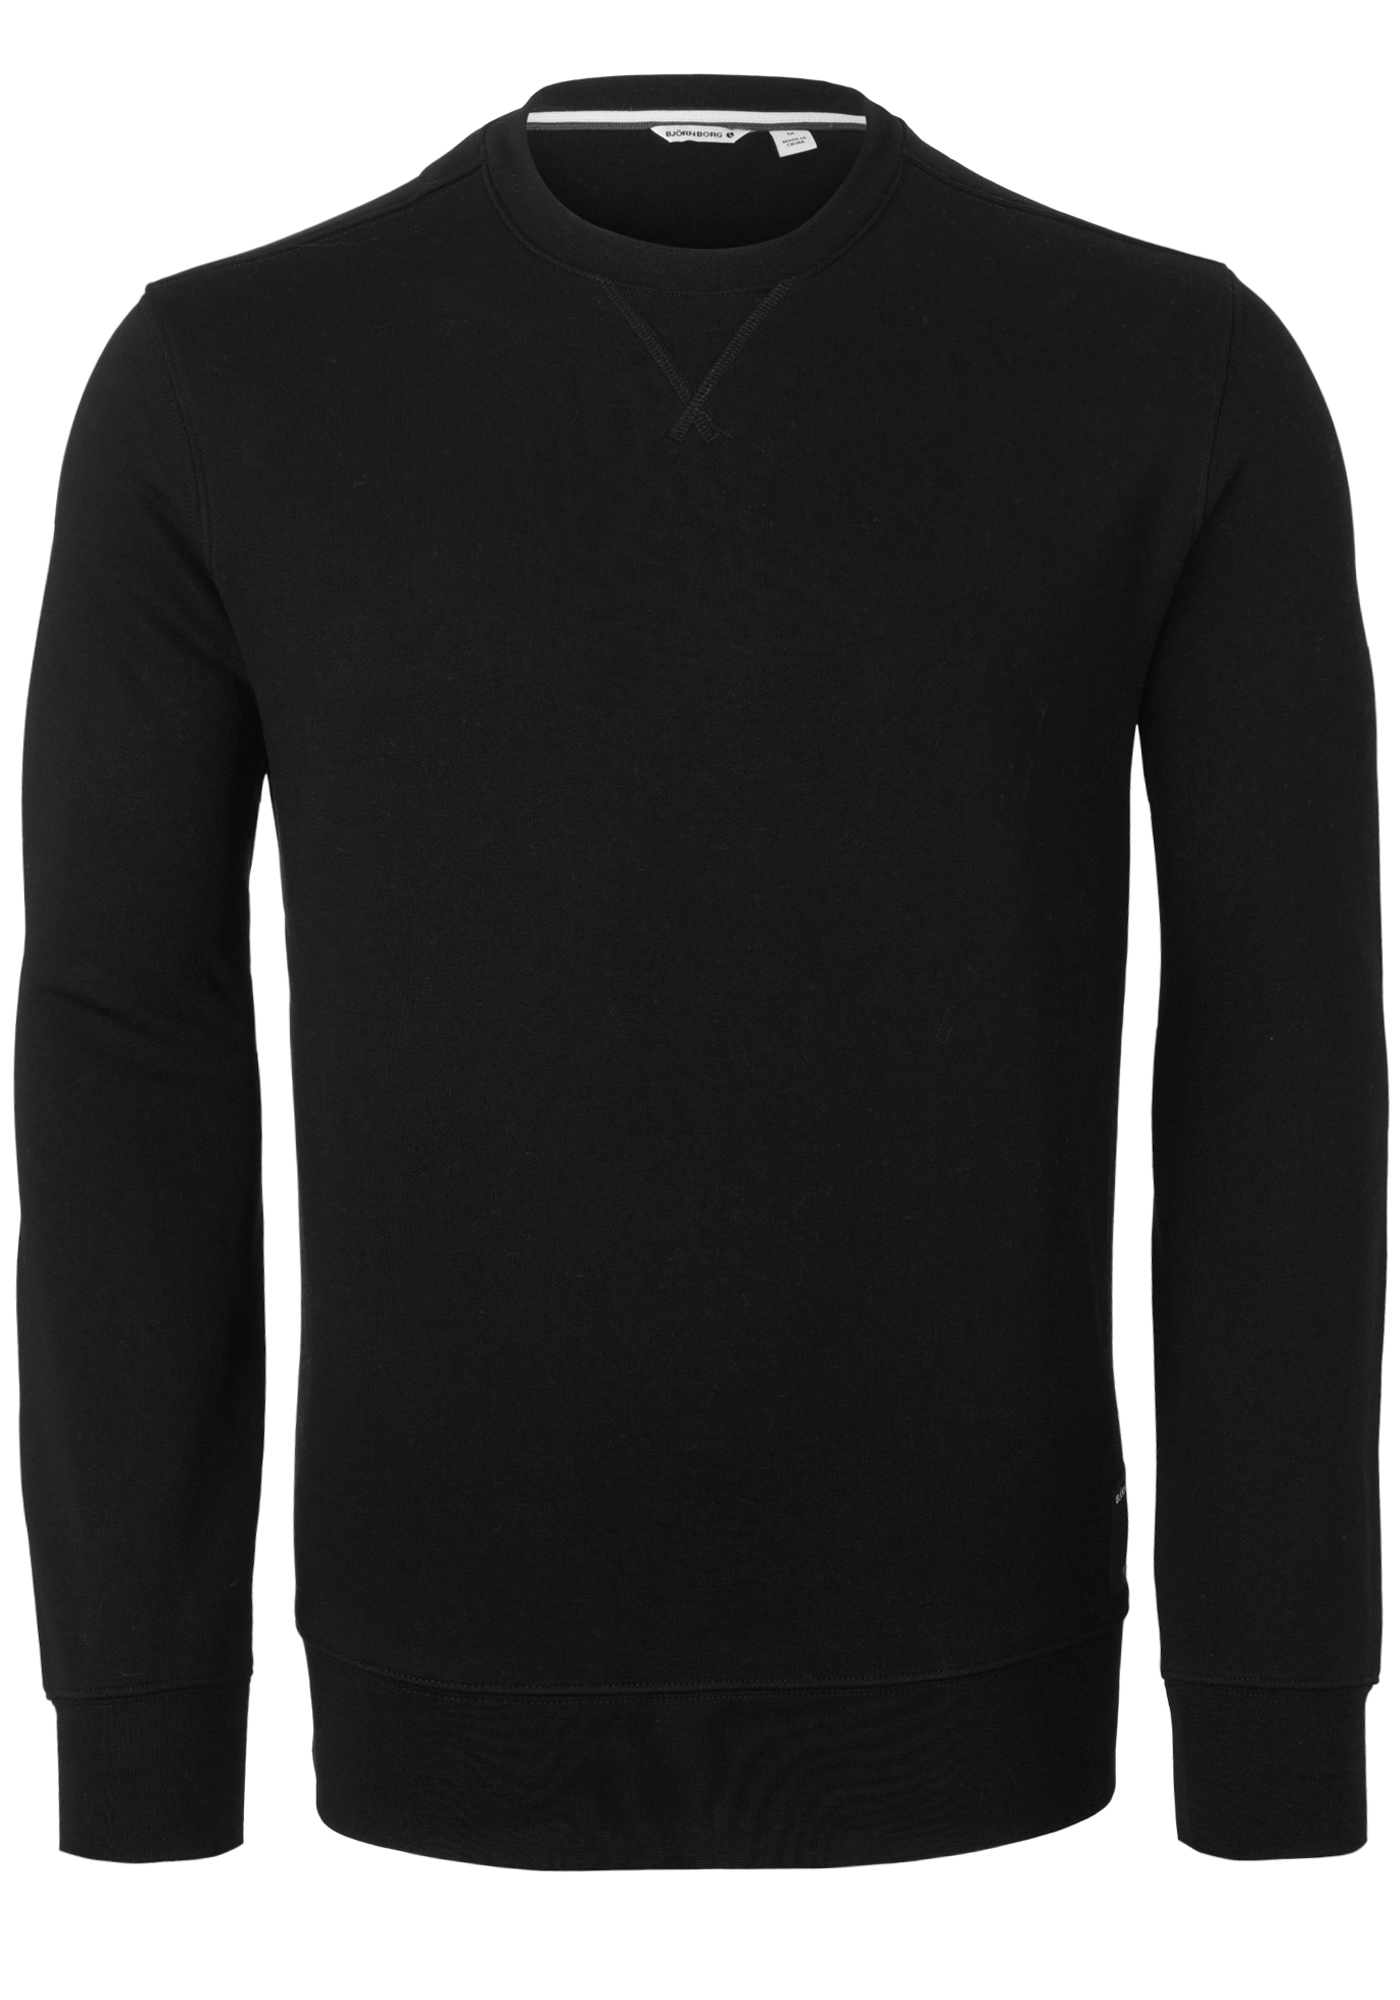 Bjorn Borg crew neck sweater, heren sweatshirt dik, zwart